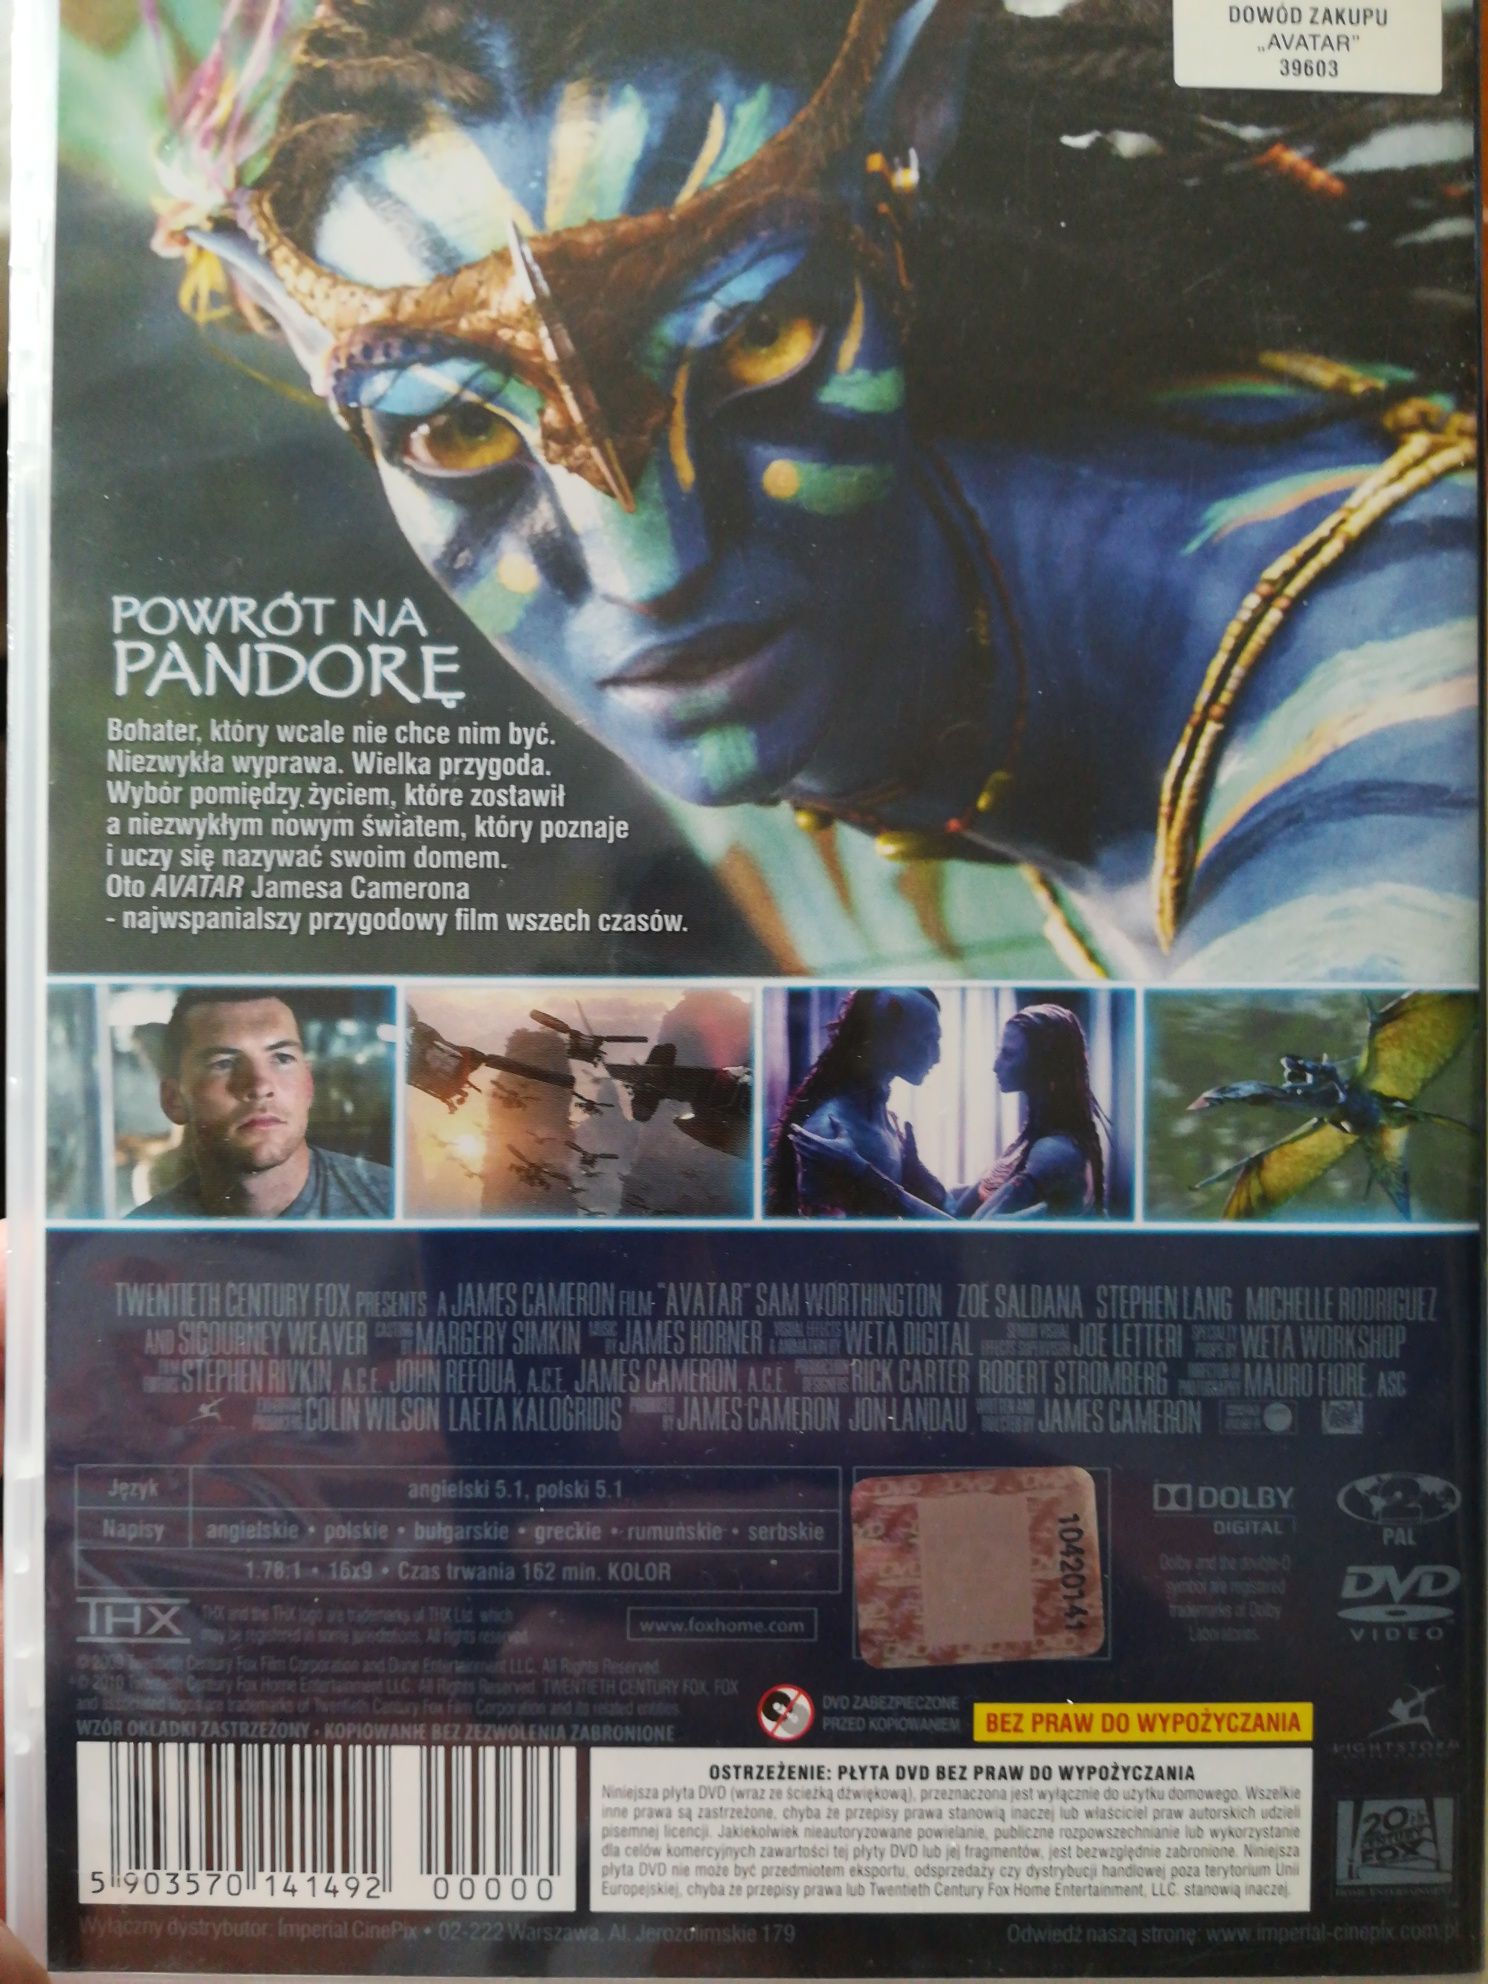 Avatar płyta DVD, J. Cameron's.